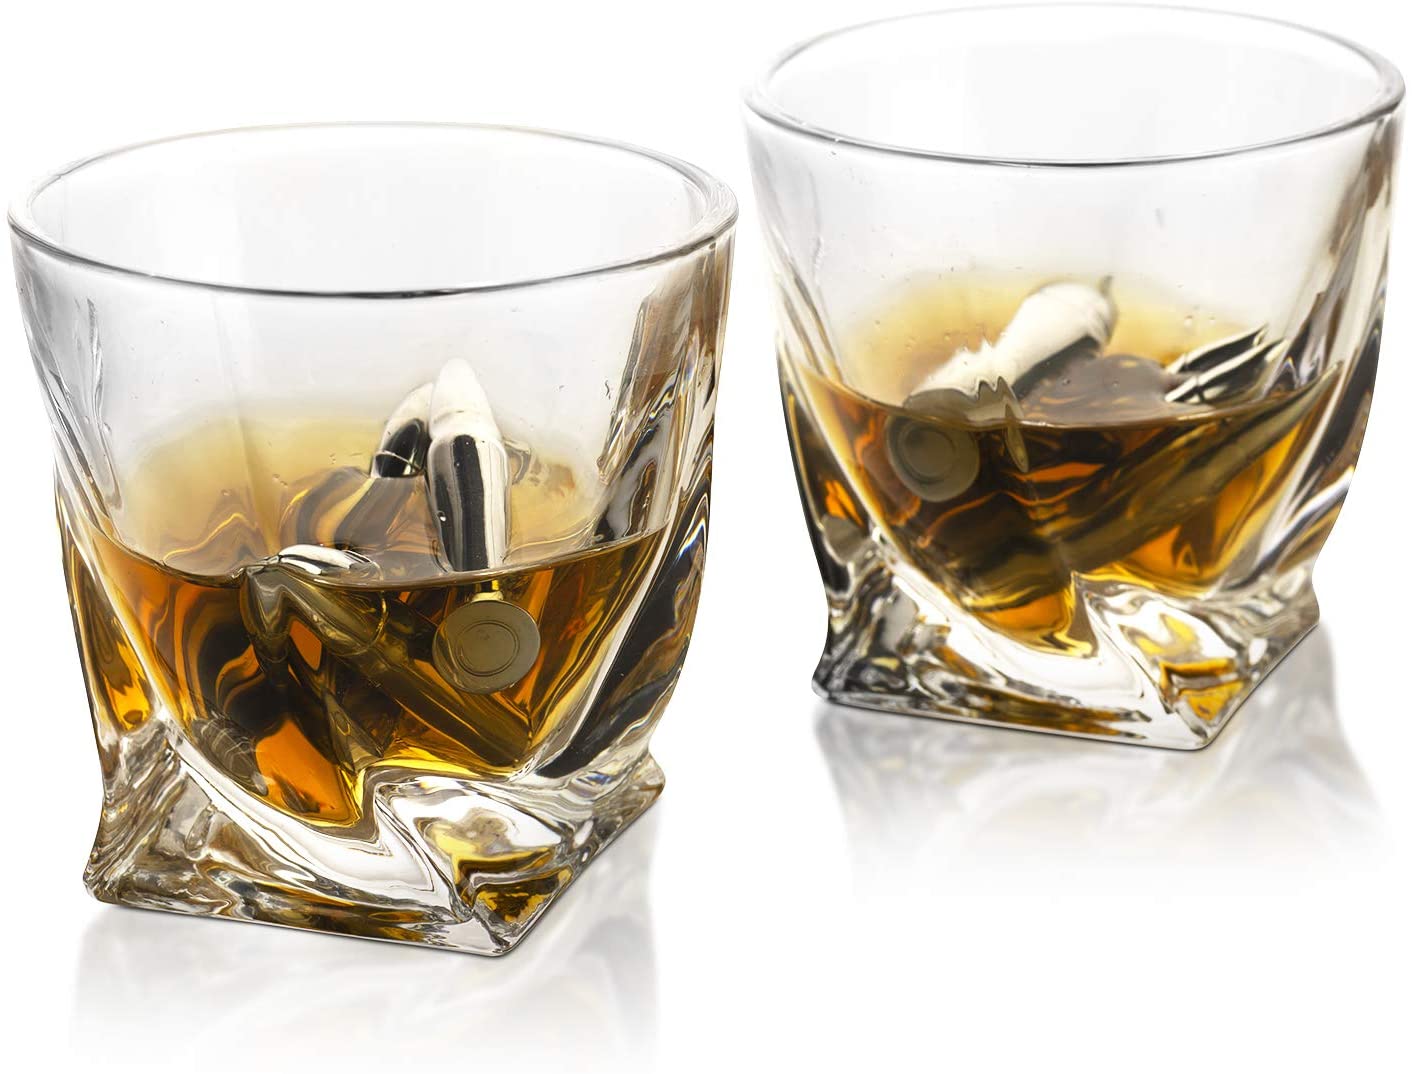 Bullet Whiskey Stones & Glasses Gift Set for Men - by The Wine Savant,